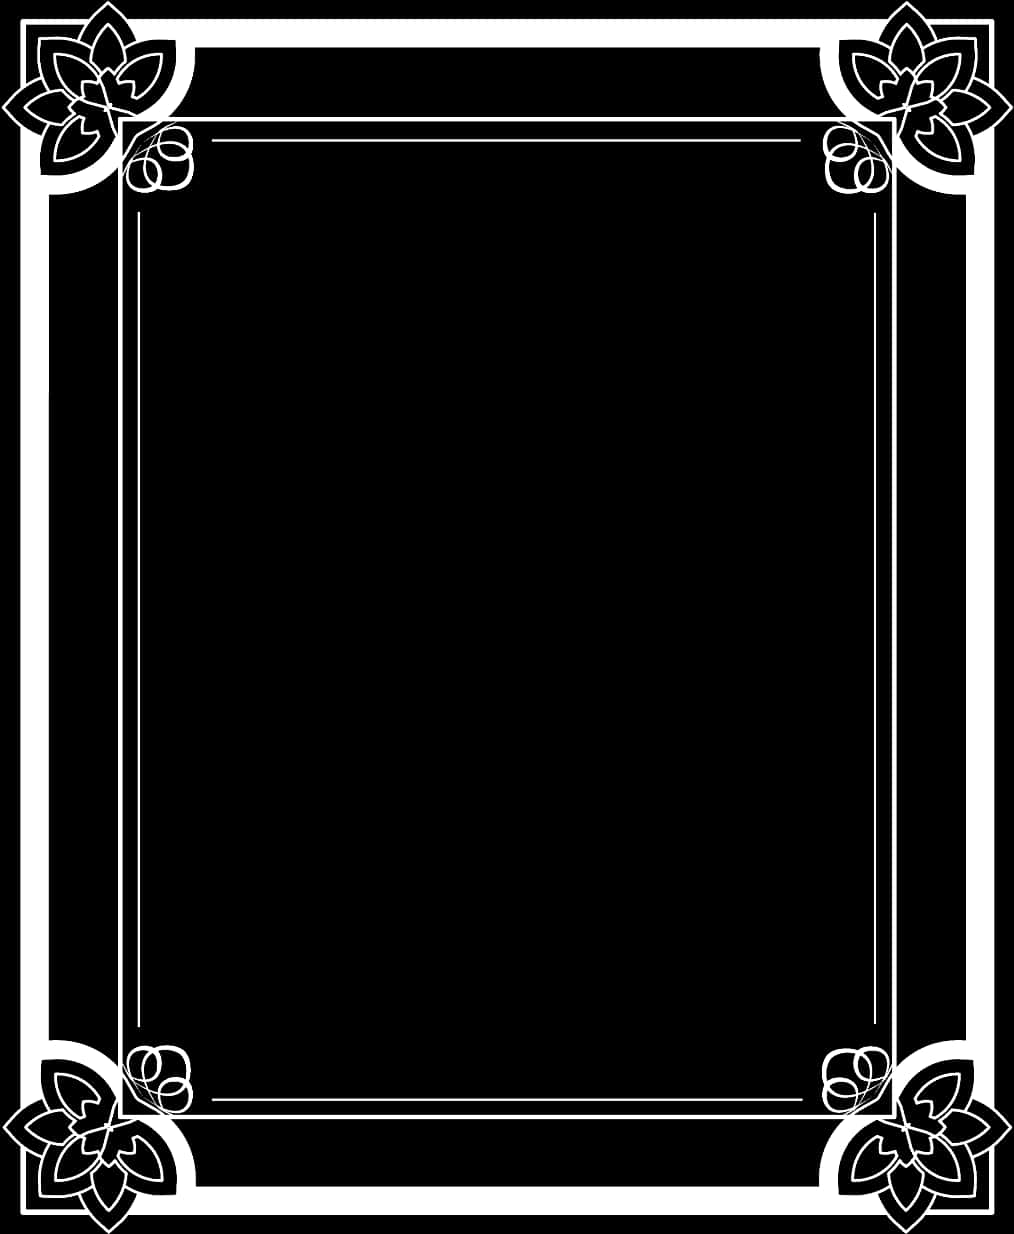 A Black And White Rectangular Frame